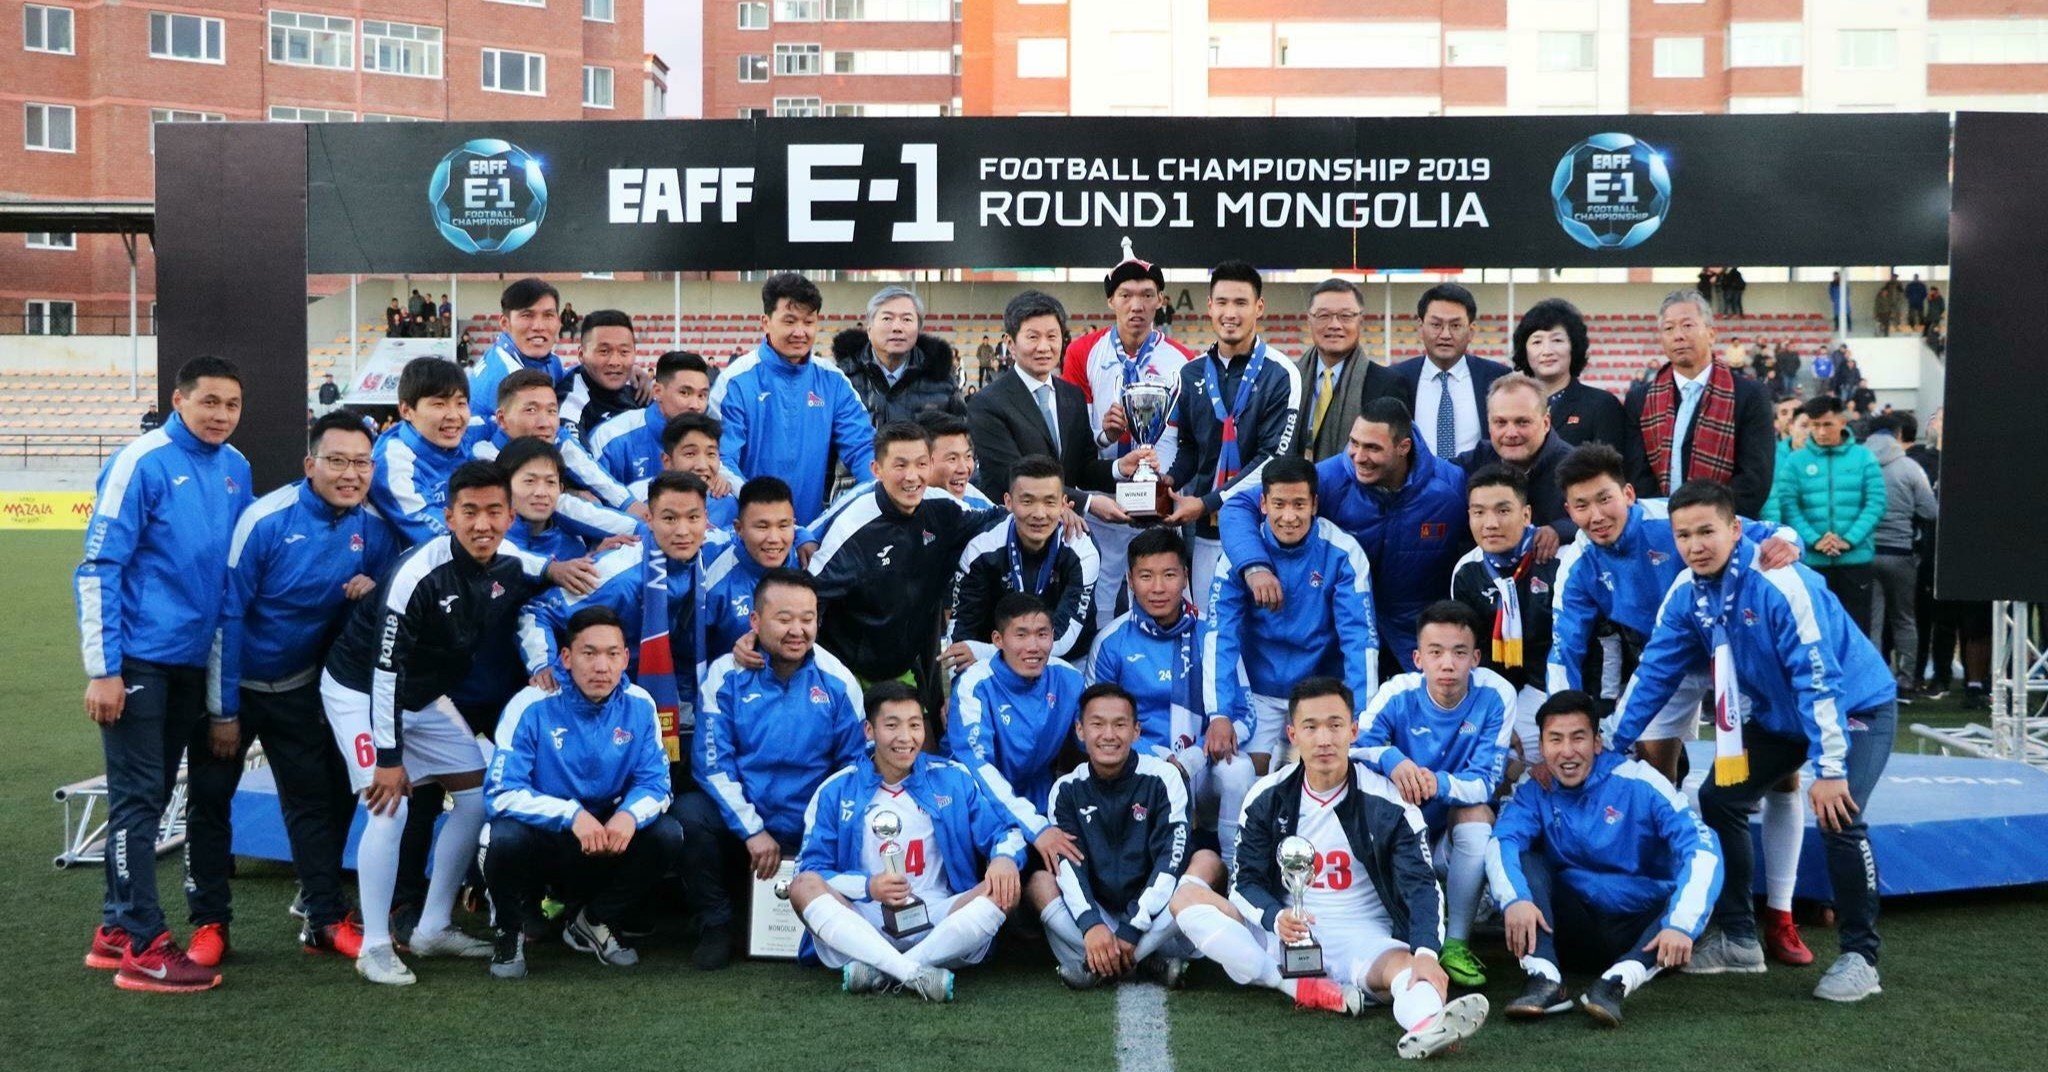 モンゴル国内におけるサッカー現場での活動 錦戸雅俊 モンゴルのトレーナー Note